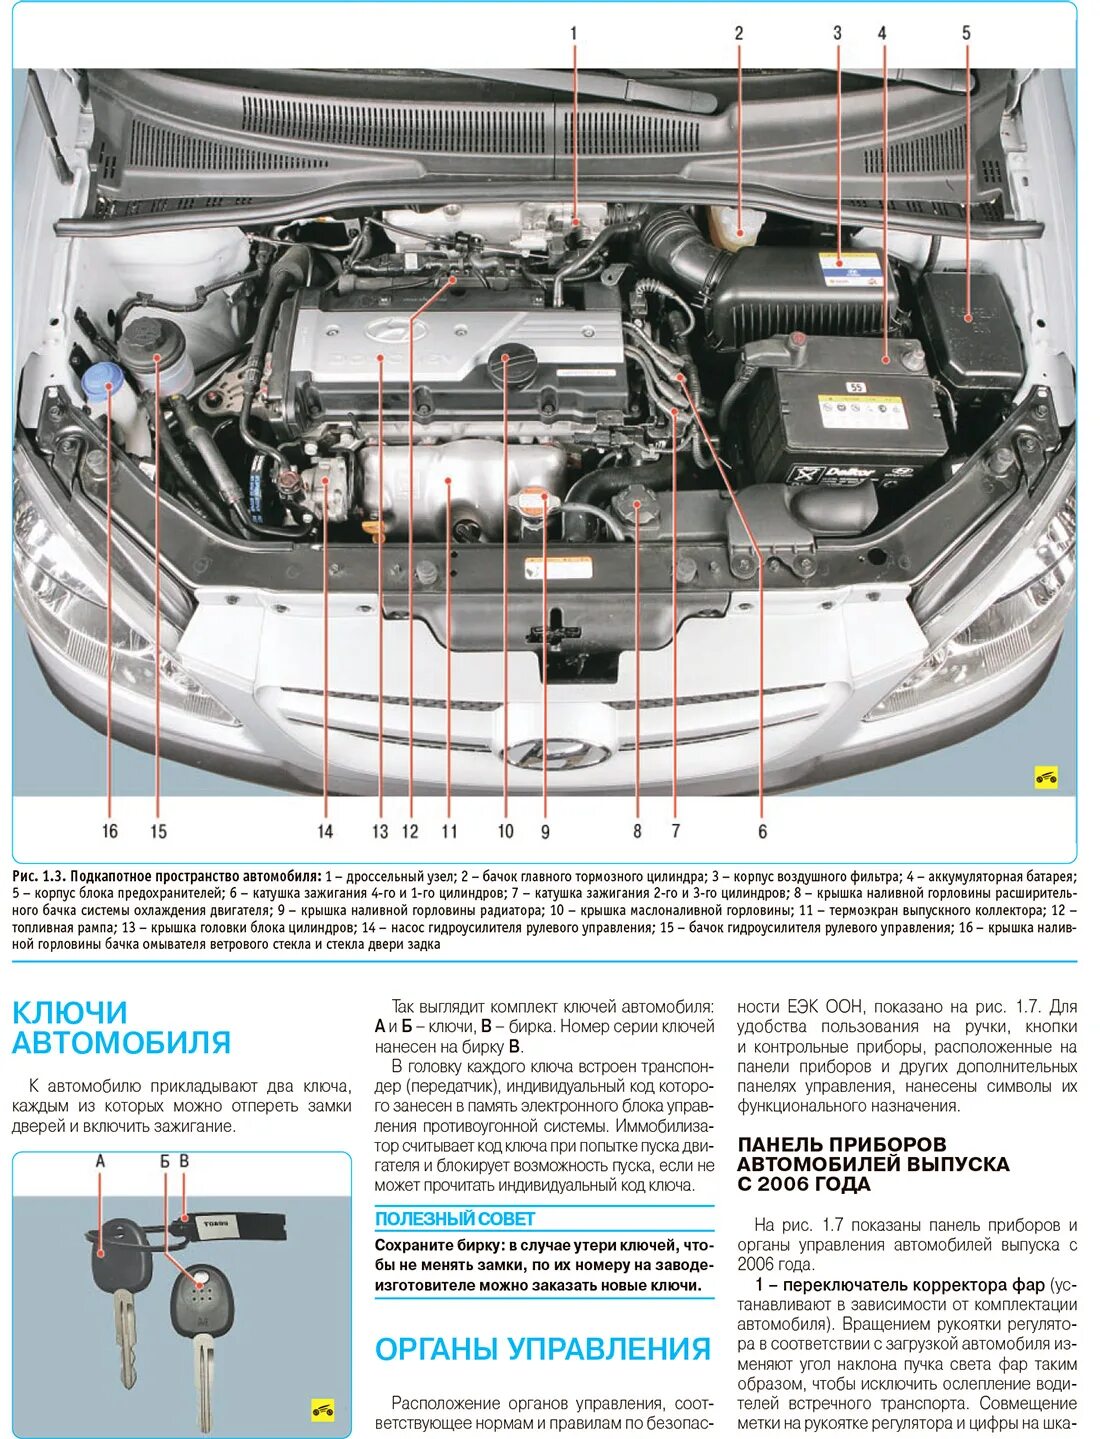 Хендай гетц где номера. Hyundai Solaris расположение деталей под капотом. Схема двигателя Хендай Гетц 1.4. Hyundai Getz 1.3 схема двигателя. Хундай акцент расположение датчиков.